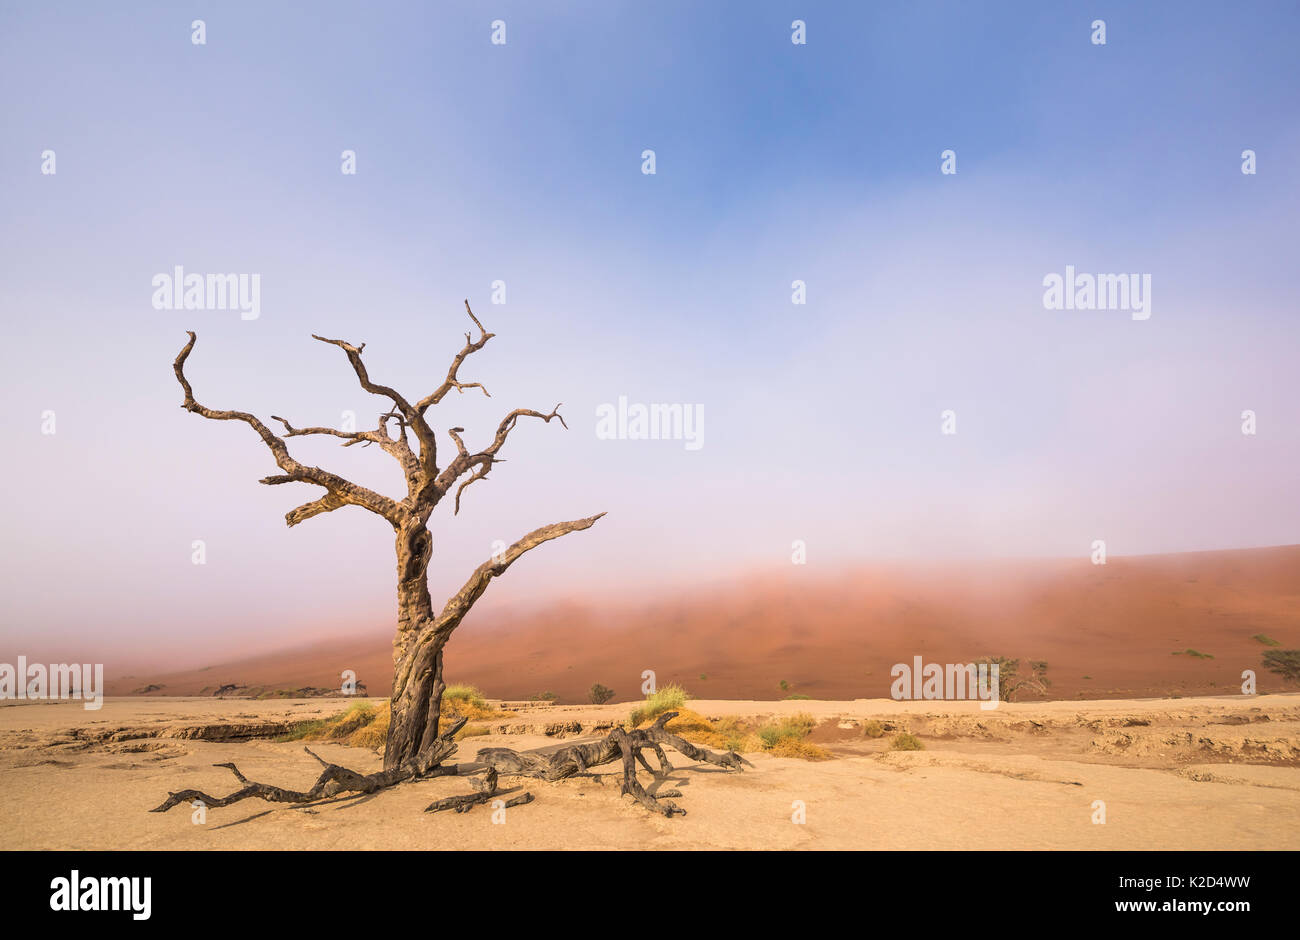 Camelthorn morts ancienne arborescence (Vachellia erioloba) arbres avec dunes rouges, désert du Namib, Deadvlei Sossusvlei, Namibie,. Août 2015. Banque D'Images